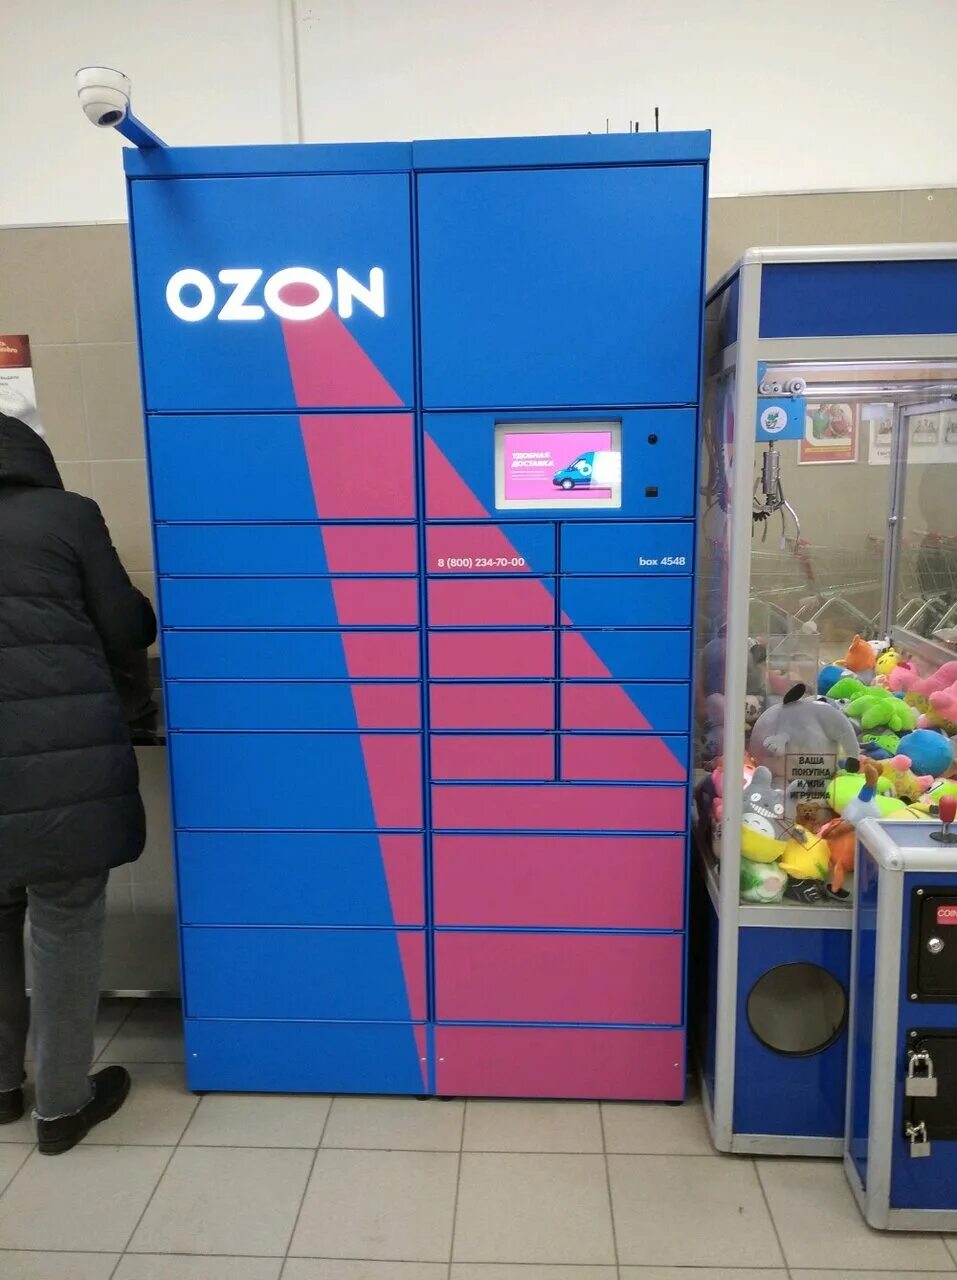 Озон апатиты. OZON терминал. Озон бокс. Почтовые терминалы OZON. Озон терминал выдачи.